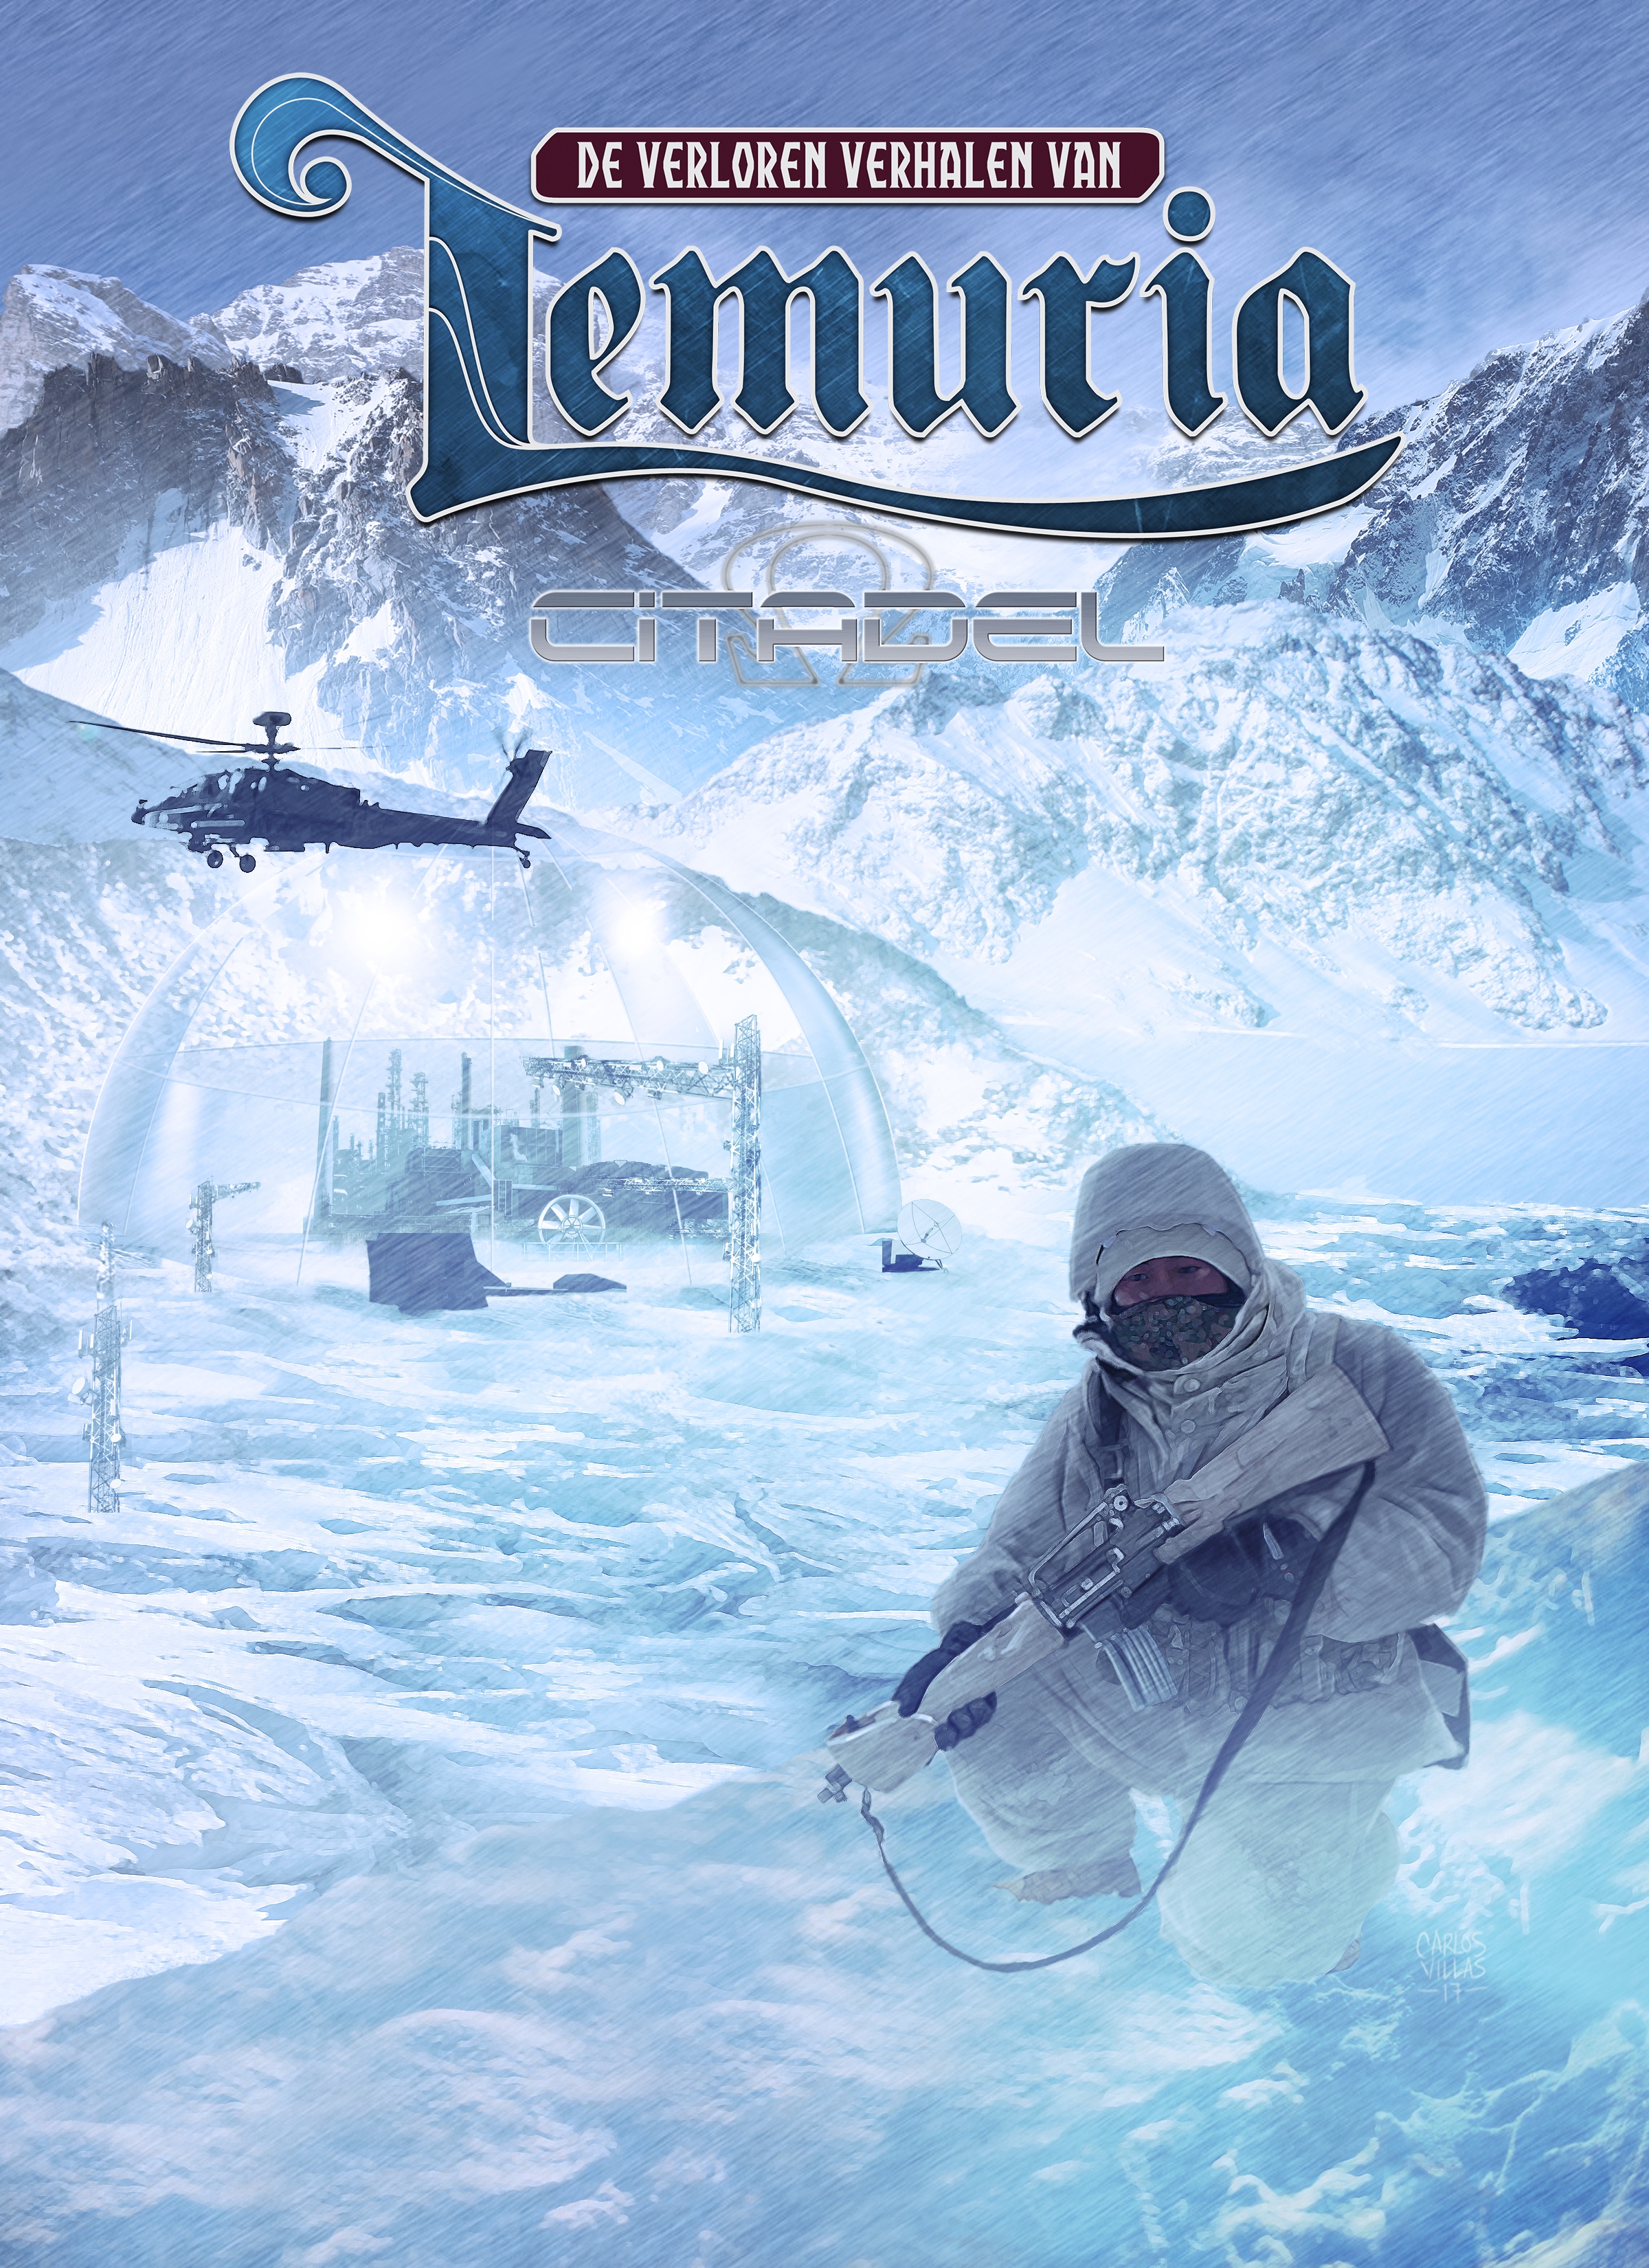 De verloren verhalen van Nemuria:  Citadel 1 ★★☆☆☆